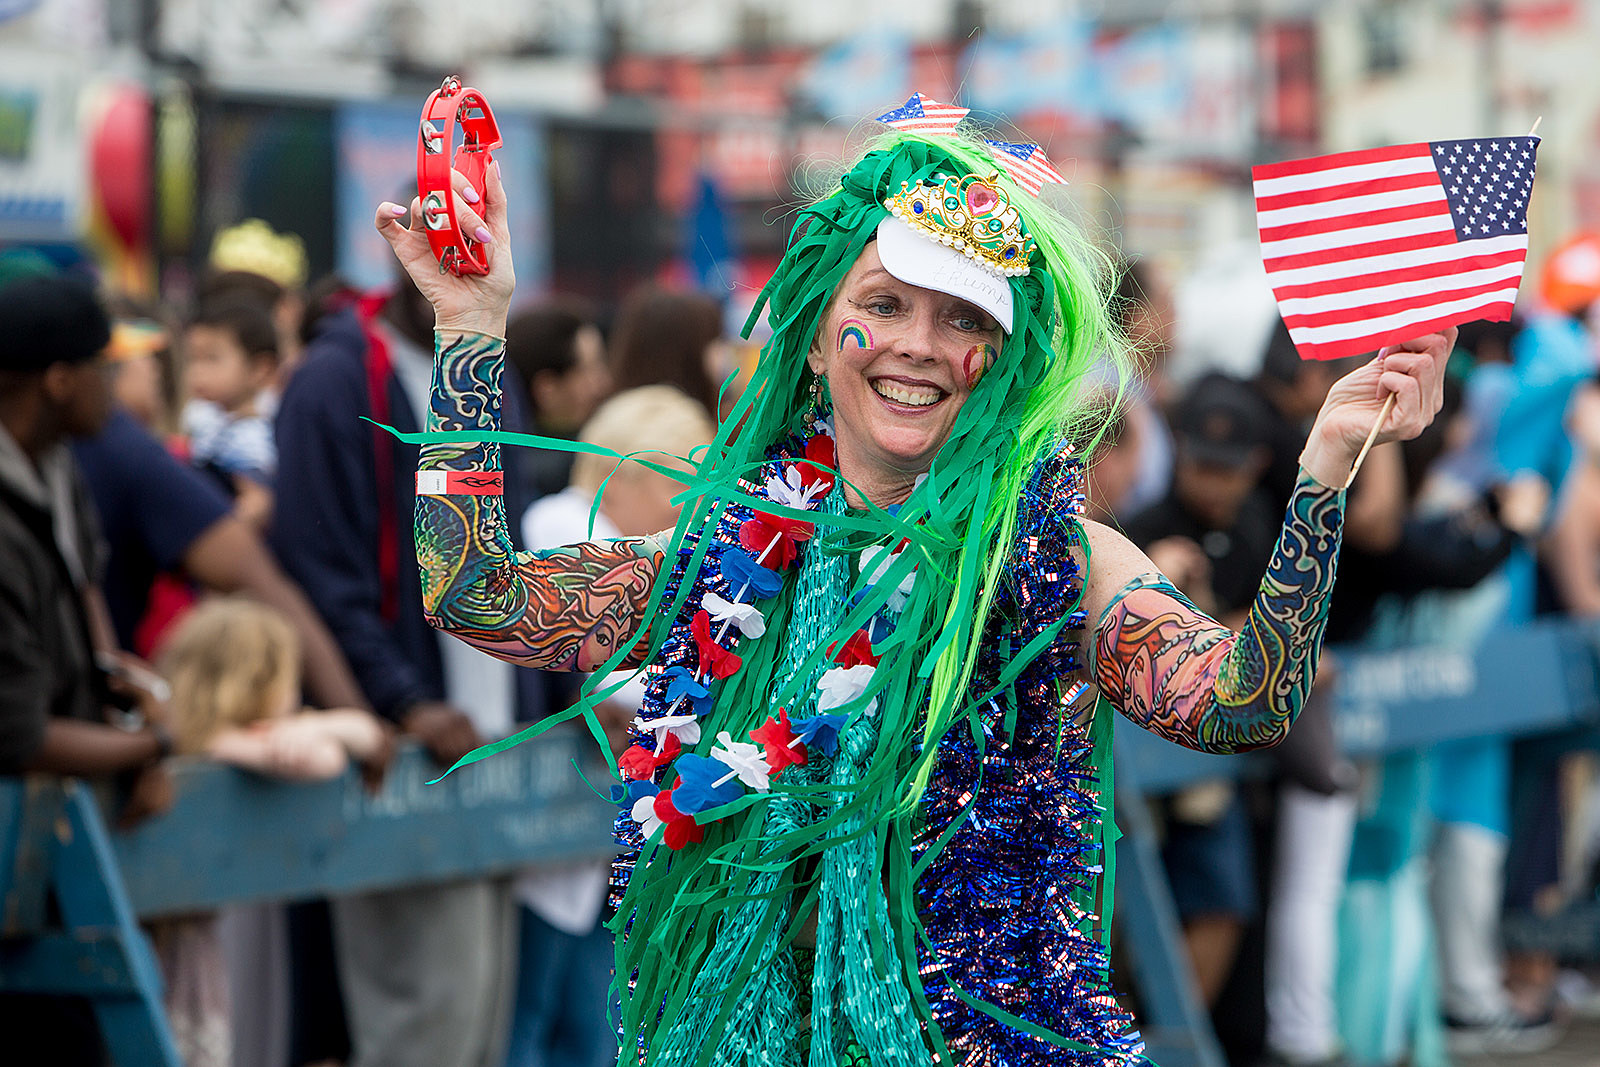 The 2017 Coney Island Mermaid Parade